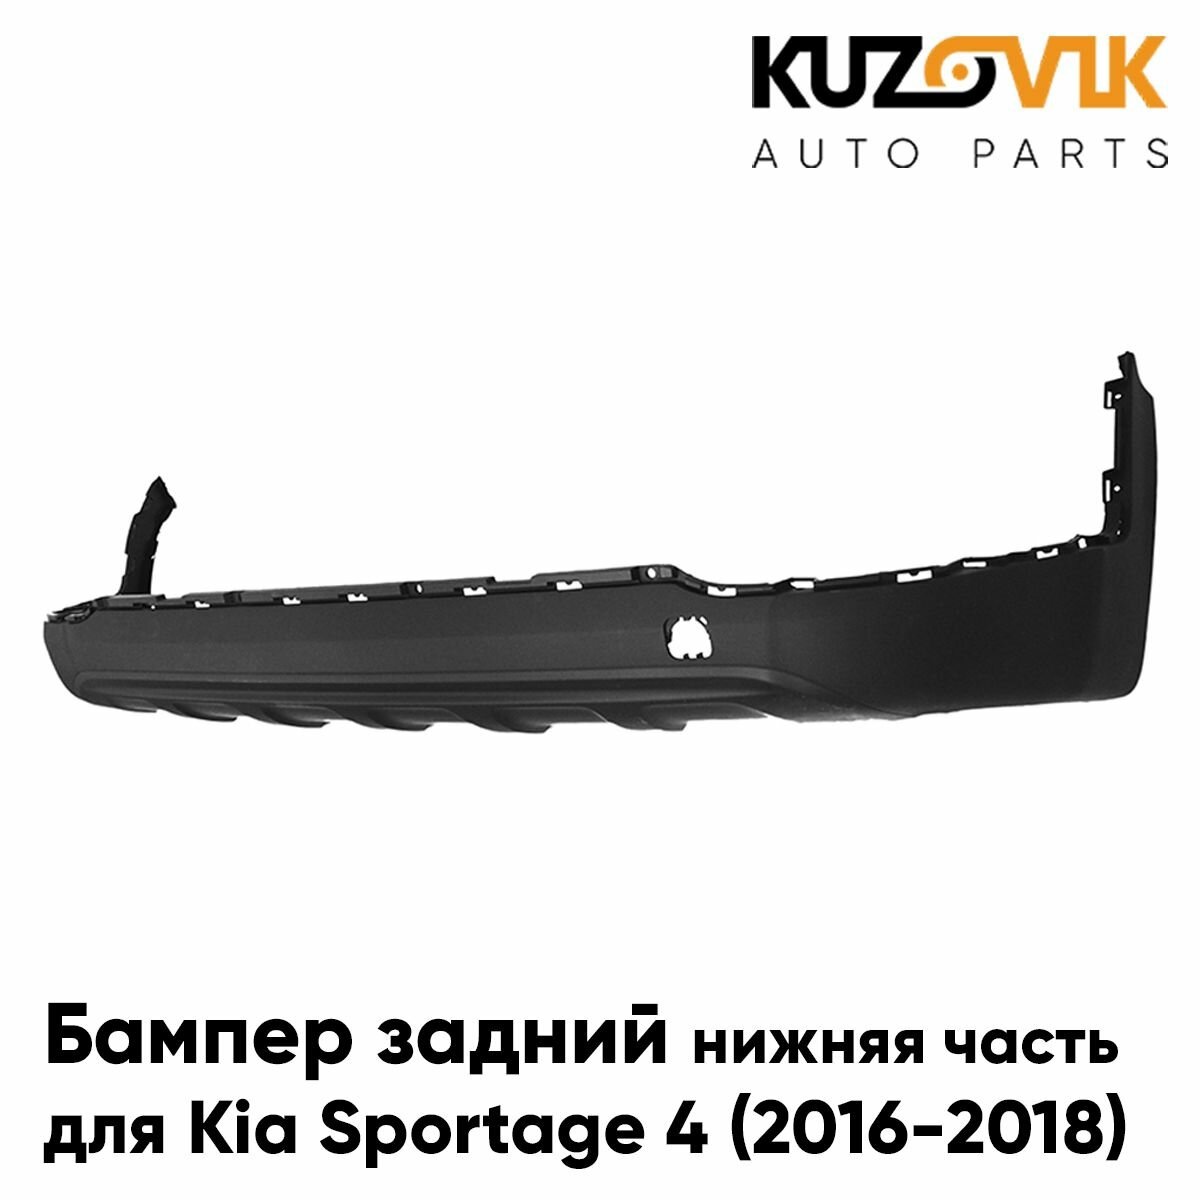 Бампер задний для Киа Спортейдж Kia Sportage 4 (2016-2018) нижняя часть накладка